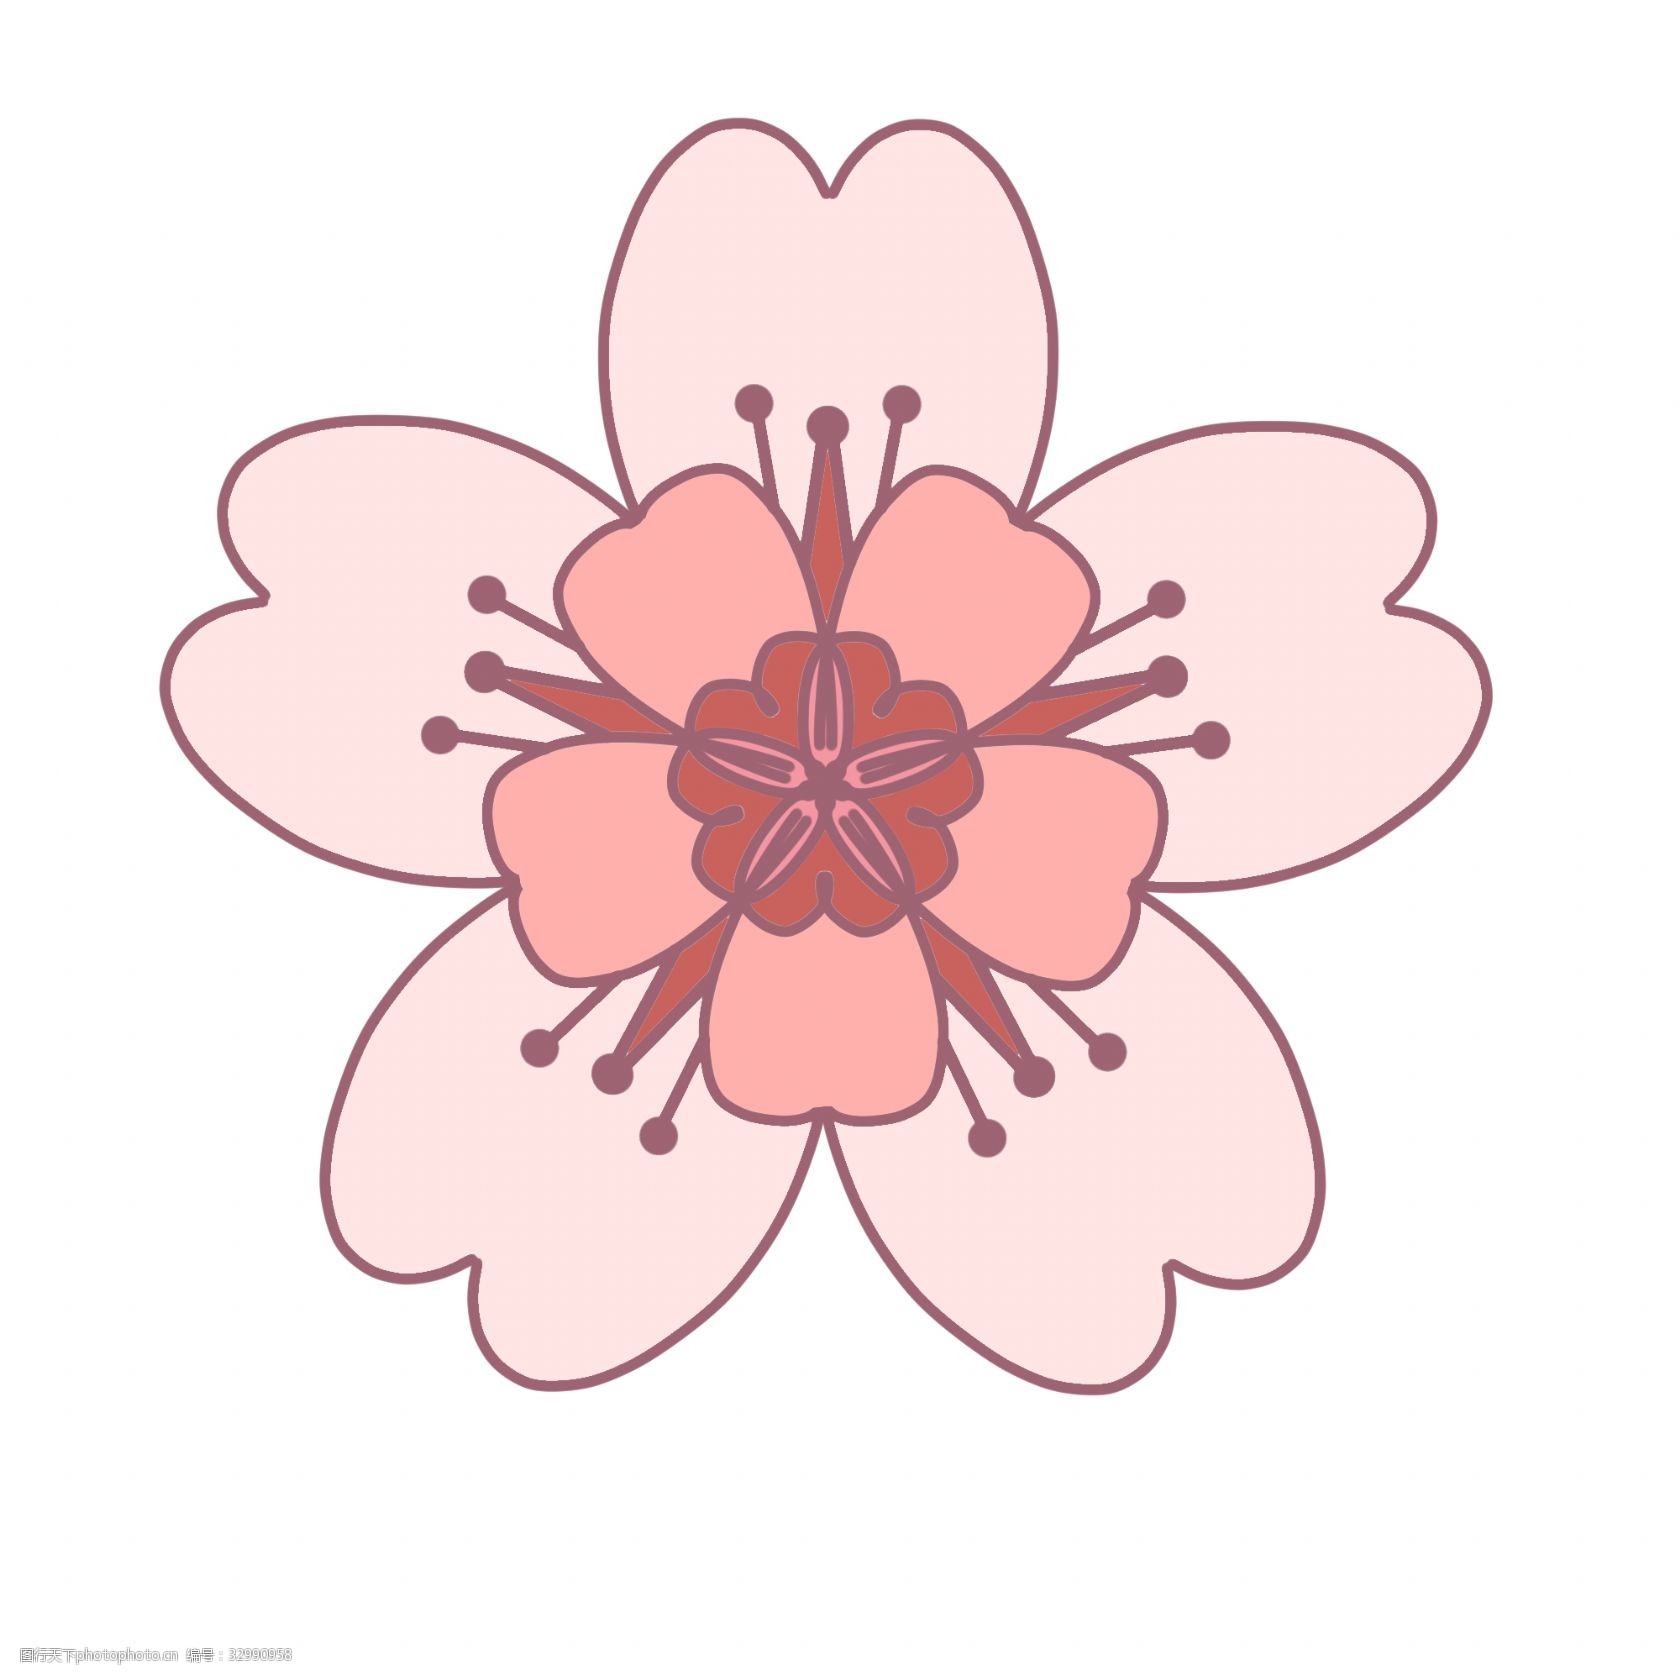 日本樱花 漂亮的樱花 粉色的樱花 创意樱花 立体樱花 卡通樱花 樱花